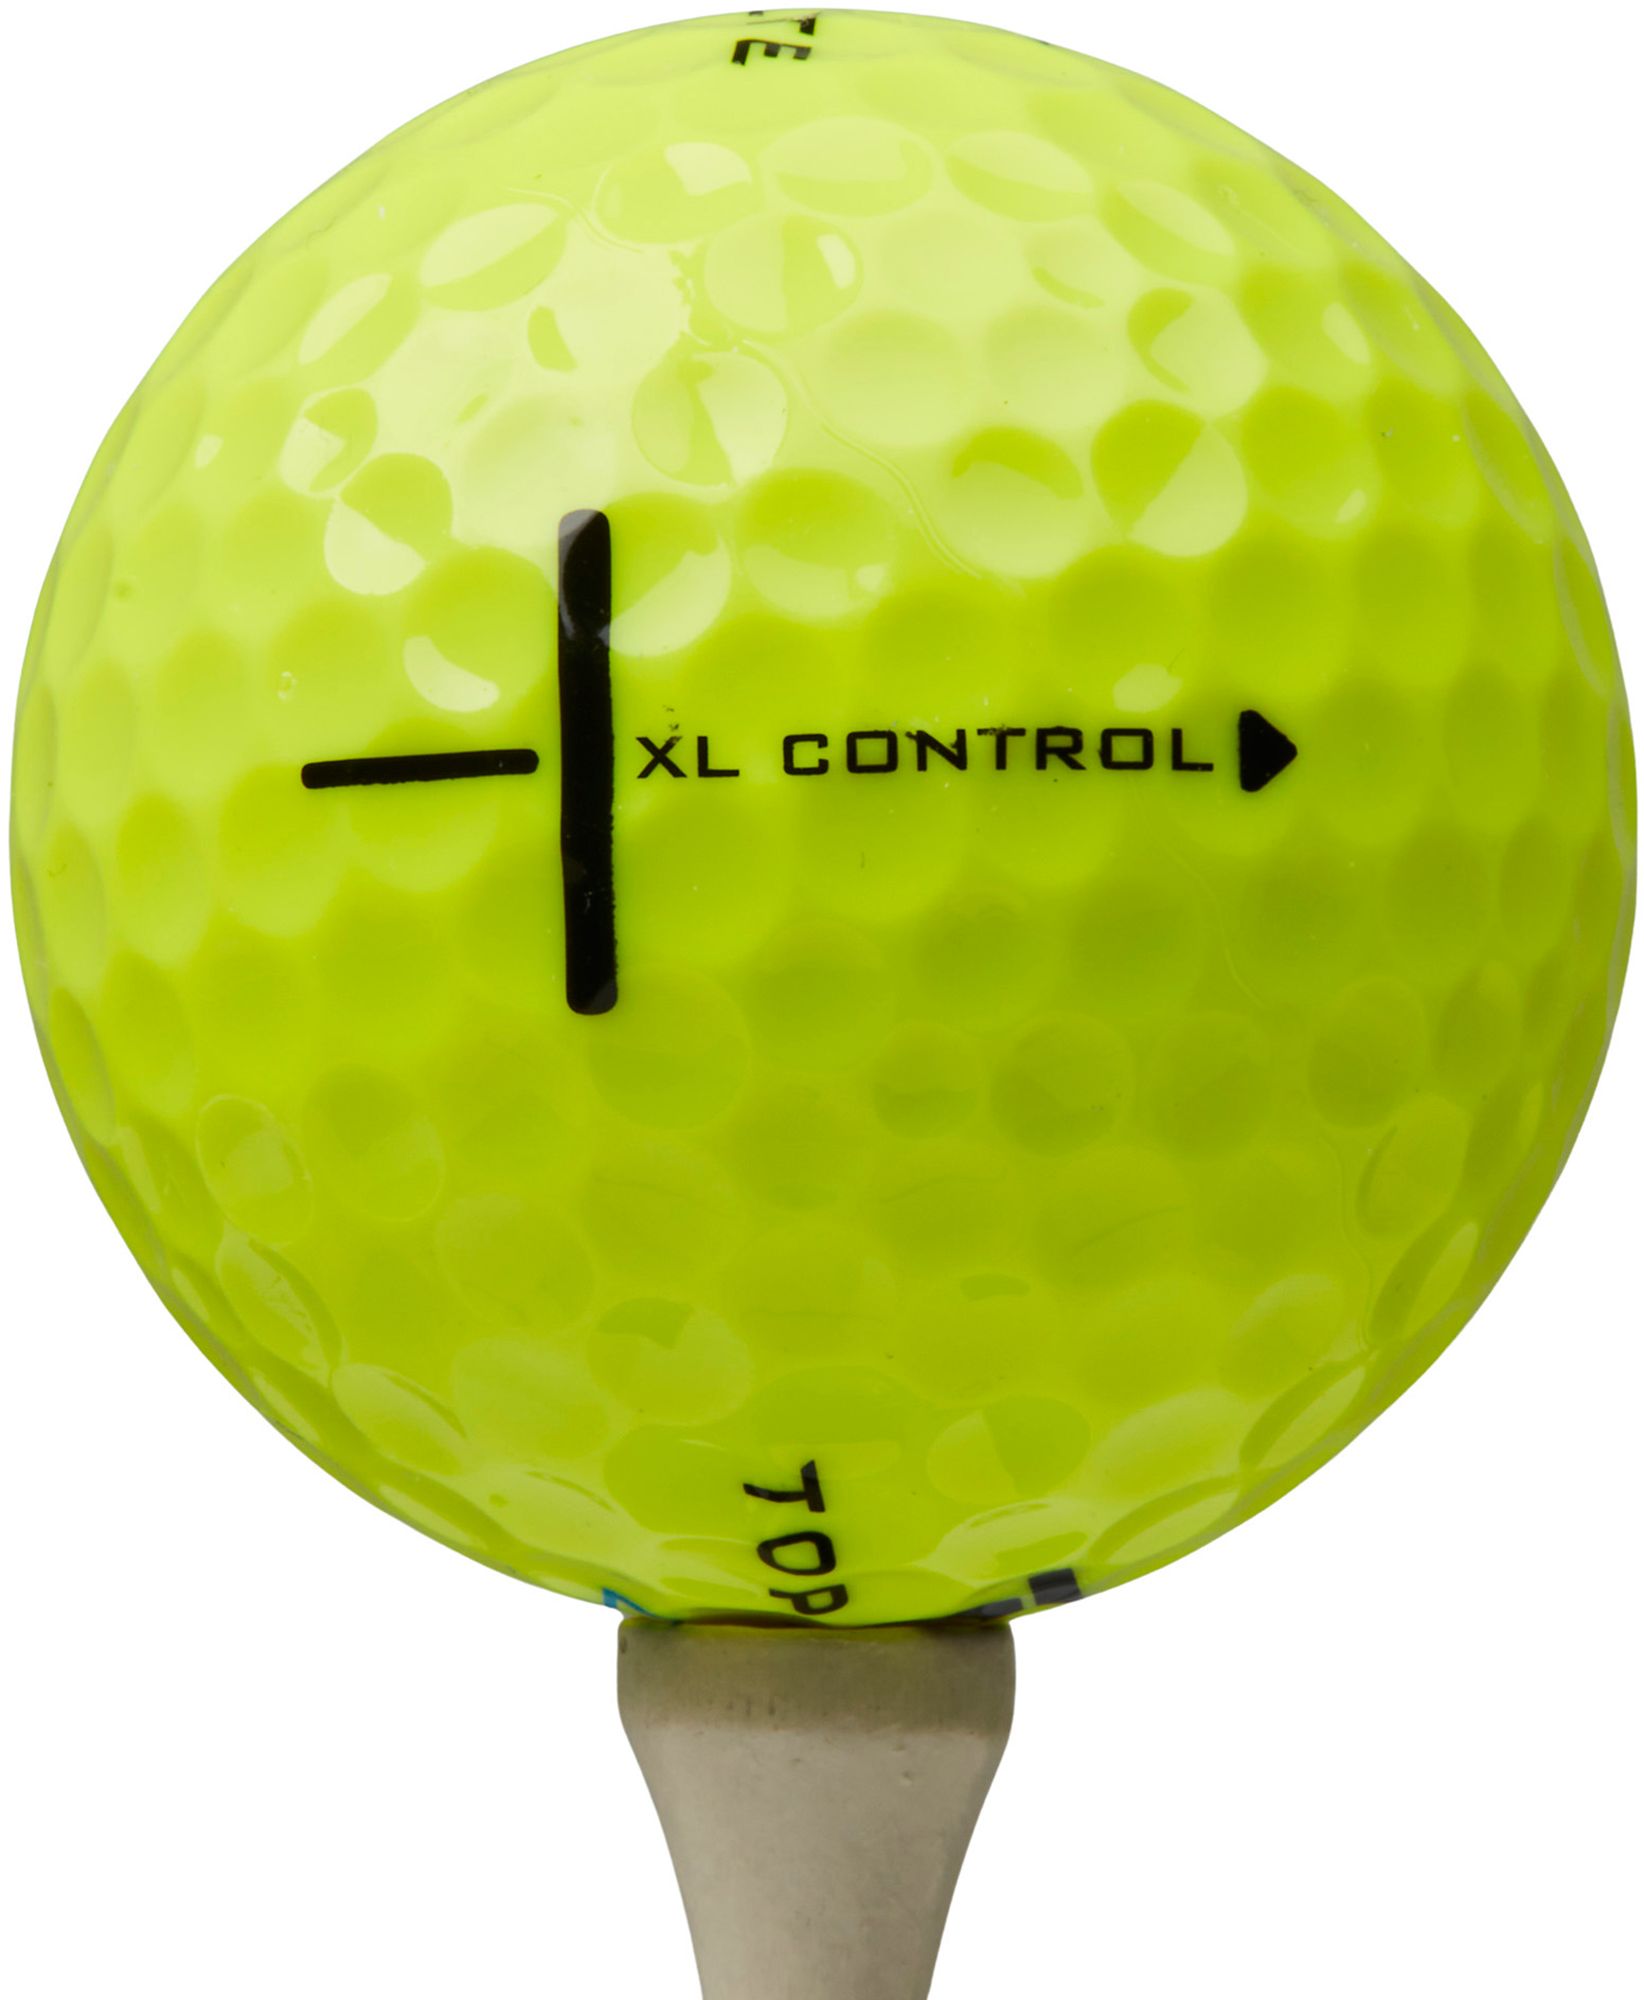 Top Flite 2024 XL Control Golf Balls